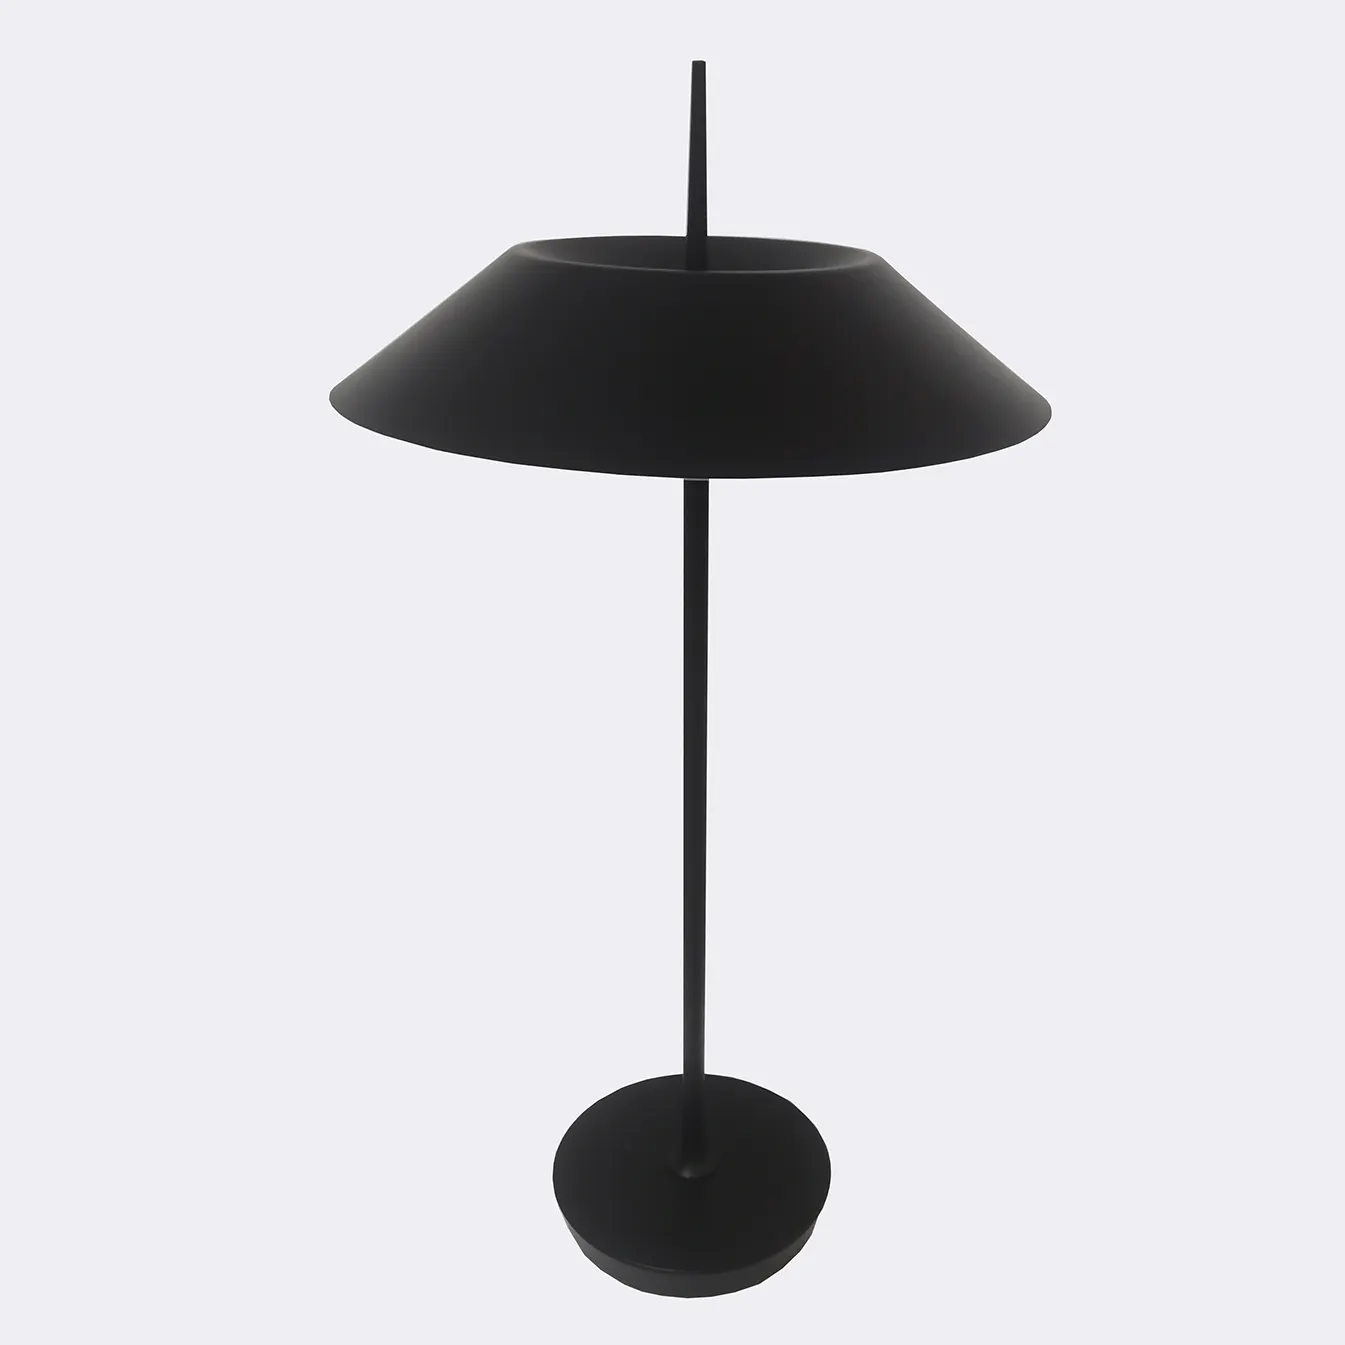 Lámpara led moderna para mesa de escritorio, luz LED táctil regulable para mesita de noche, dormitorio